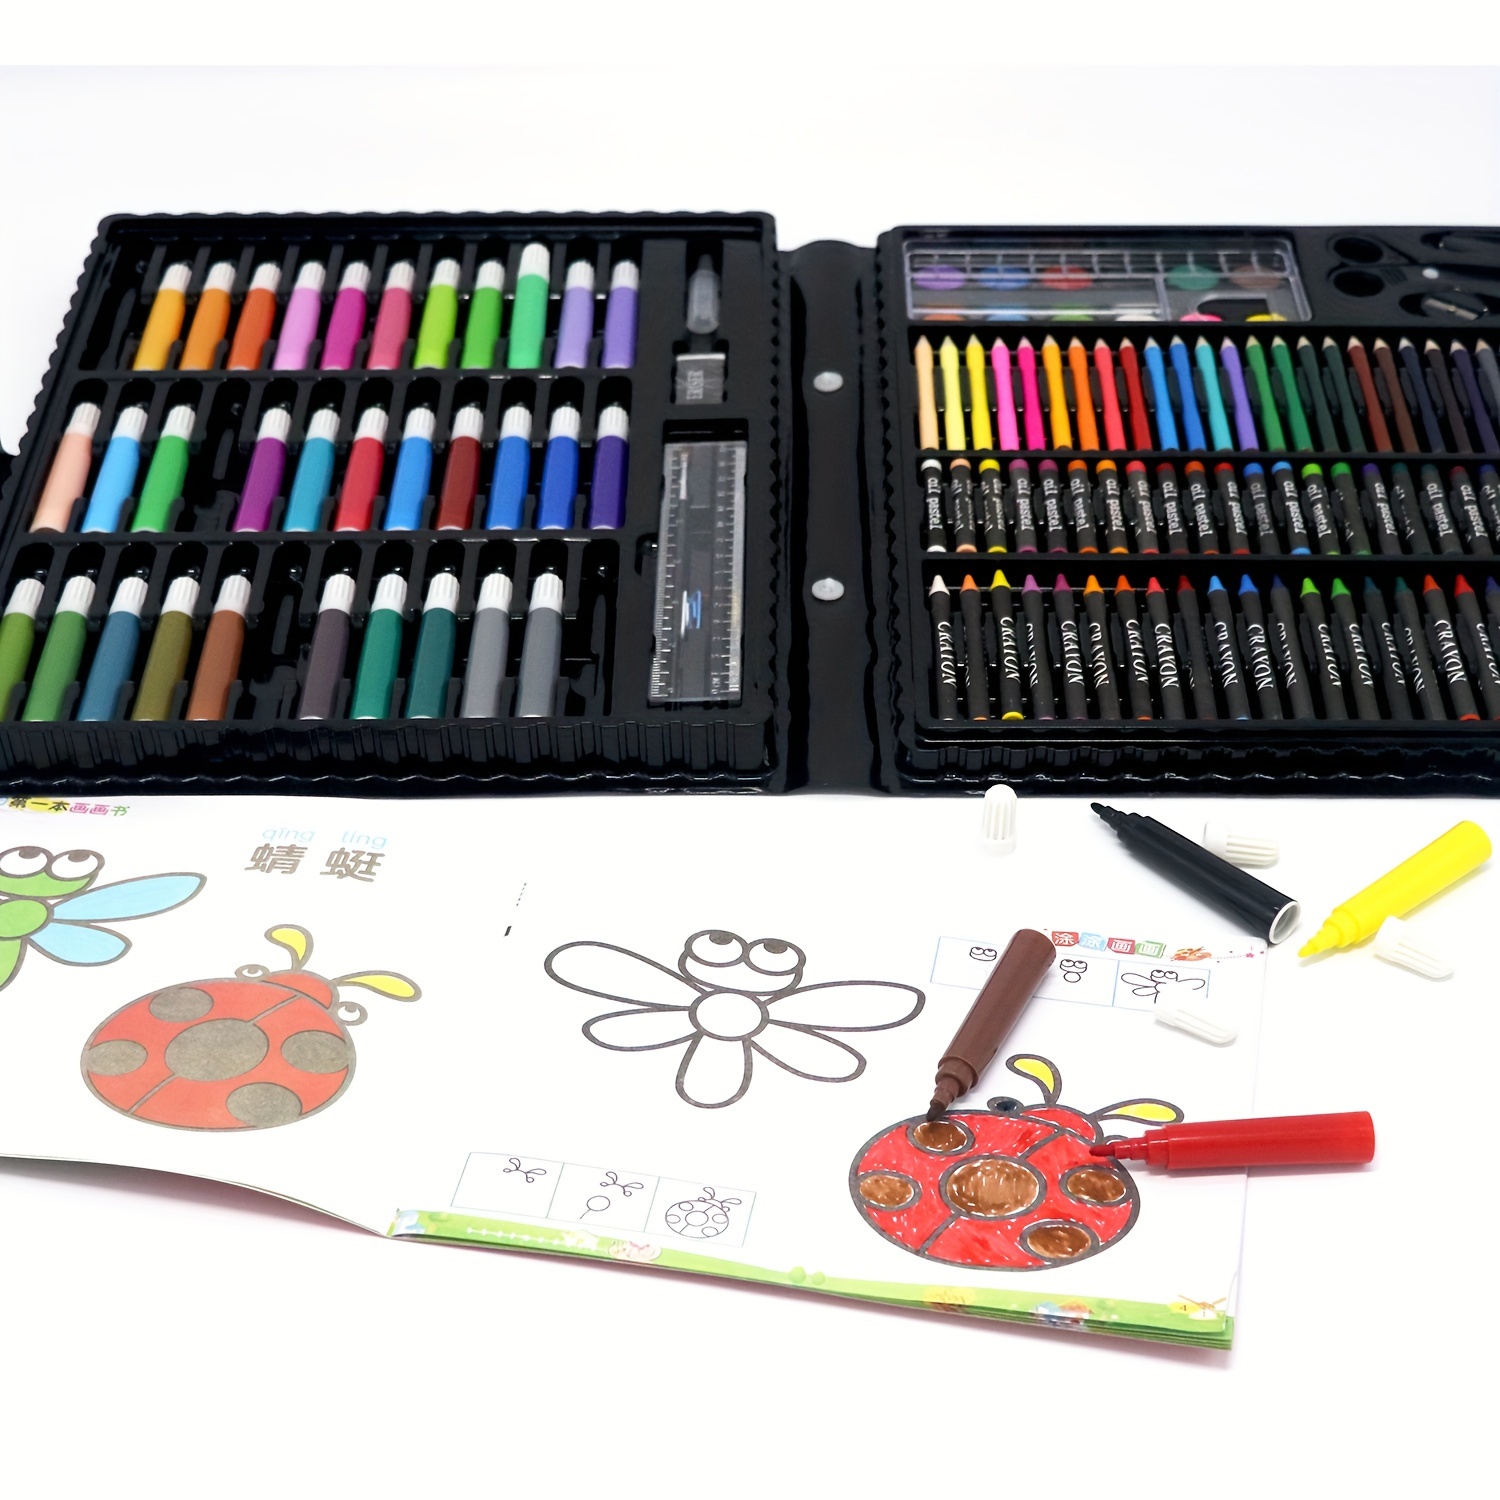 Coloriage mystère Disney Coco réalisé aux feutres et crayons de couleur  pour les ombrages.